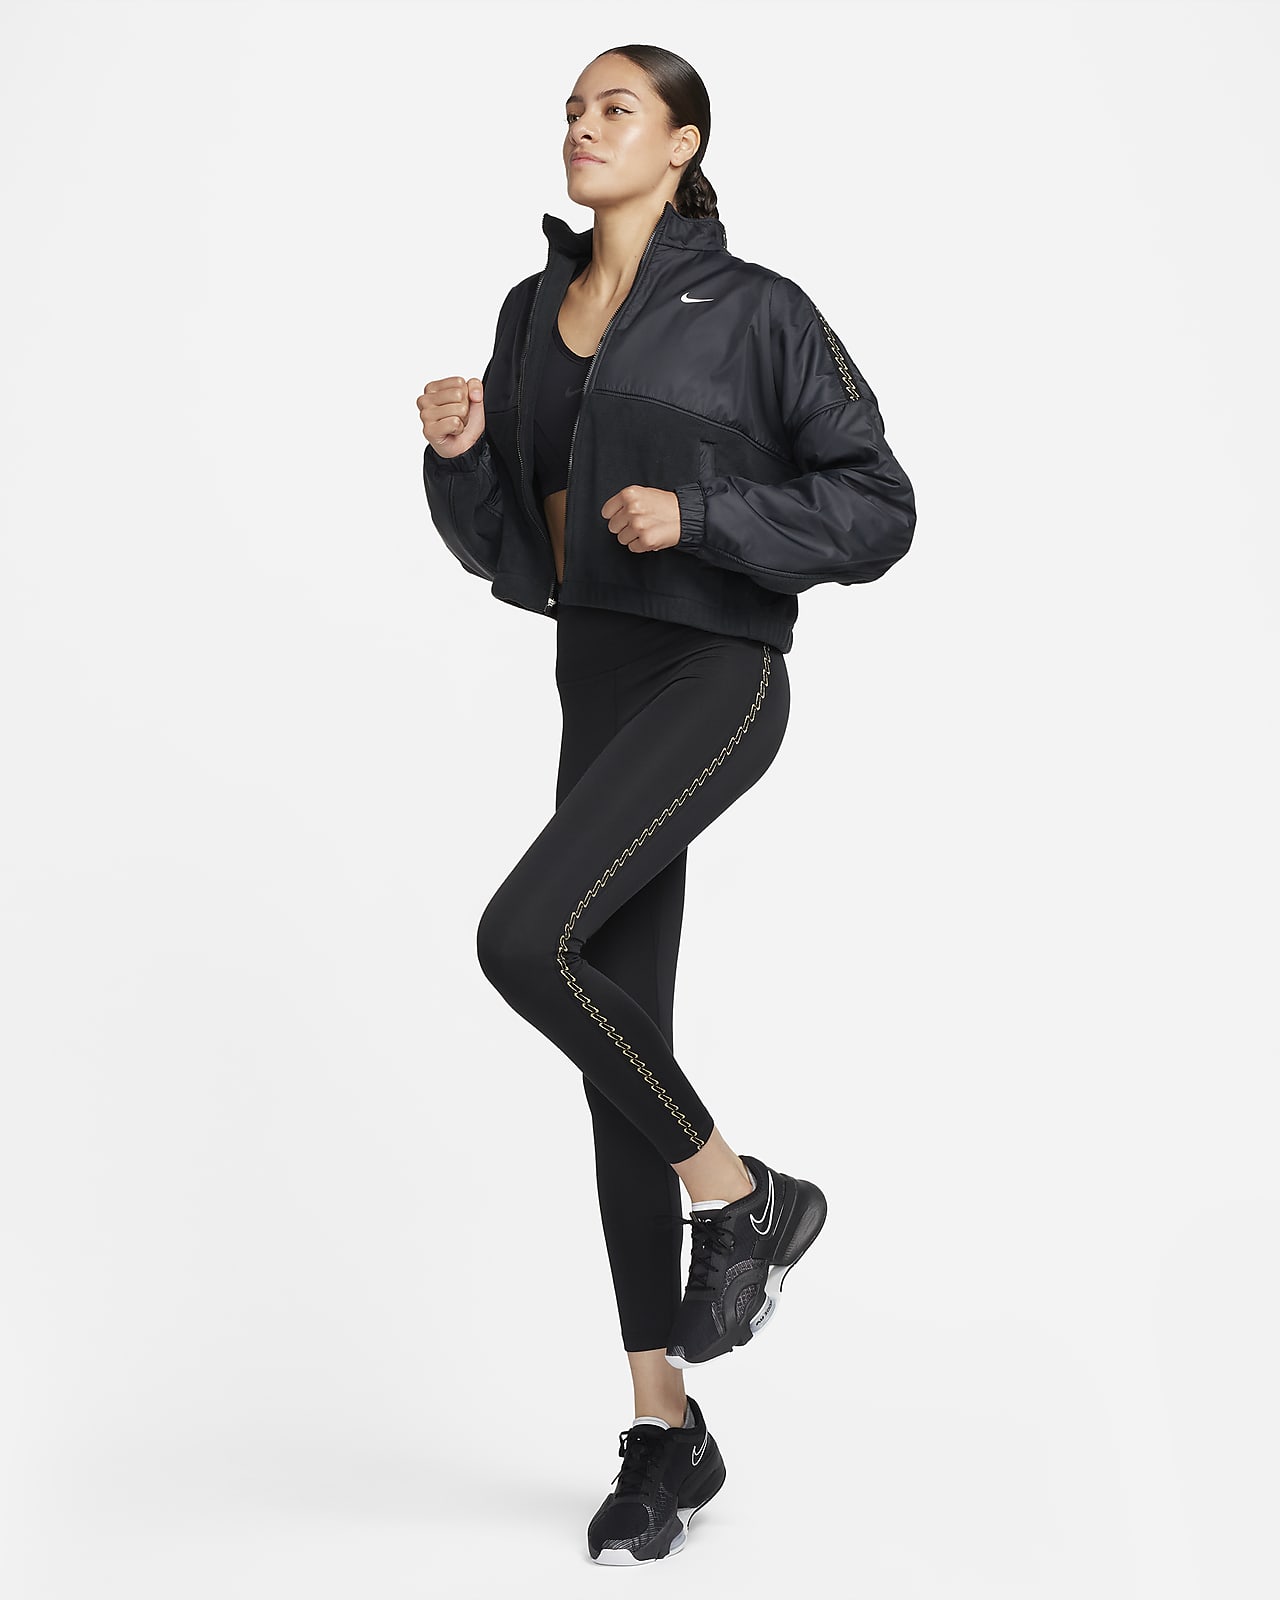 Veste à zip en tissu Fleece Nike Therma-FIT One pour femme. Nike LU